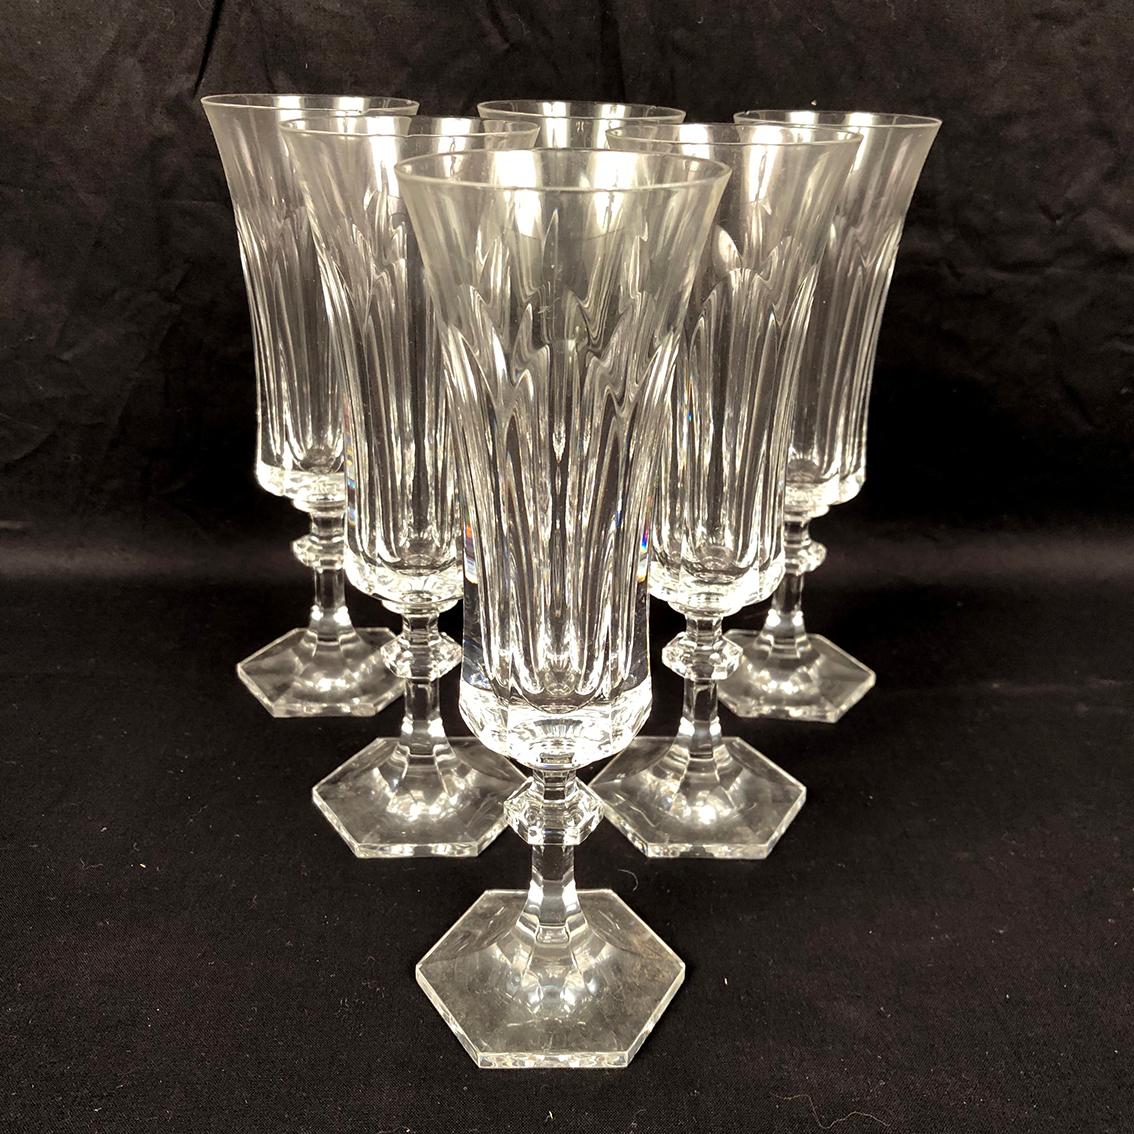 Villeroy & Boch, important service de verres en cristal, modèle Médicis For Sale 1